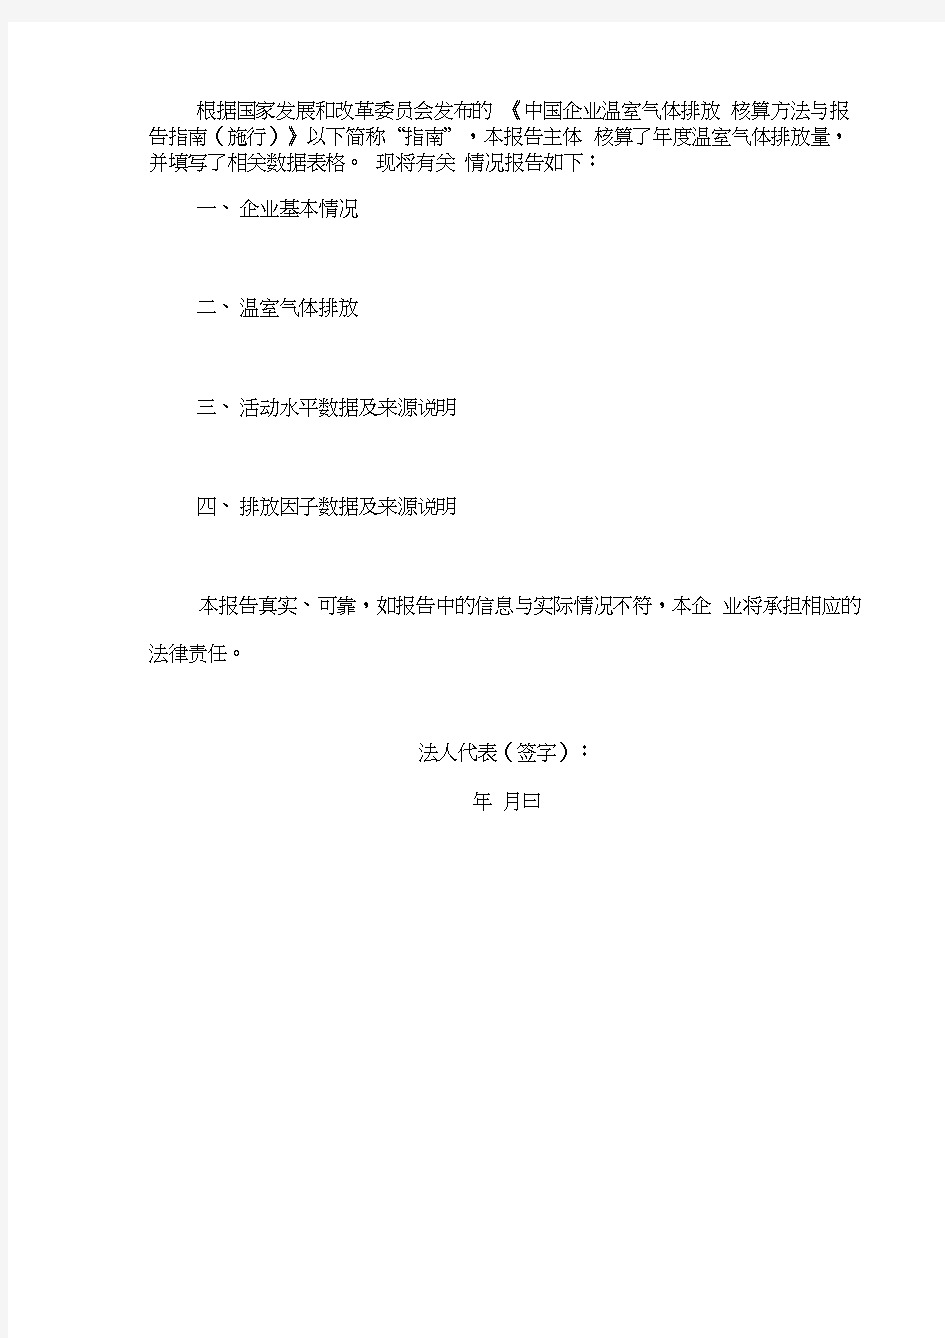 中国xx企业温室气体排放报告